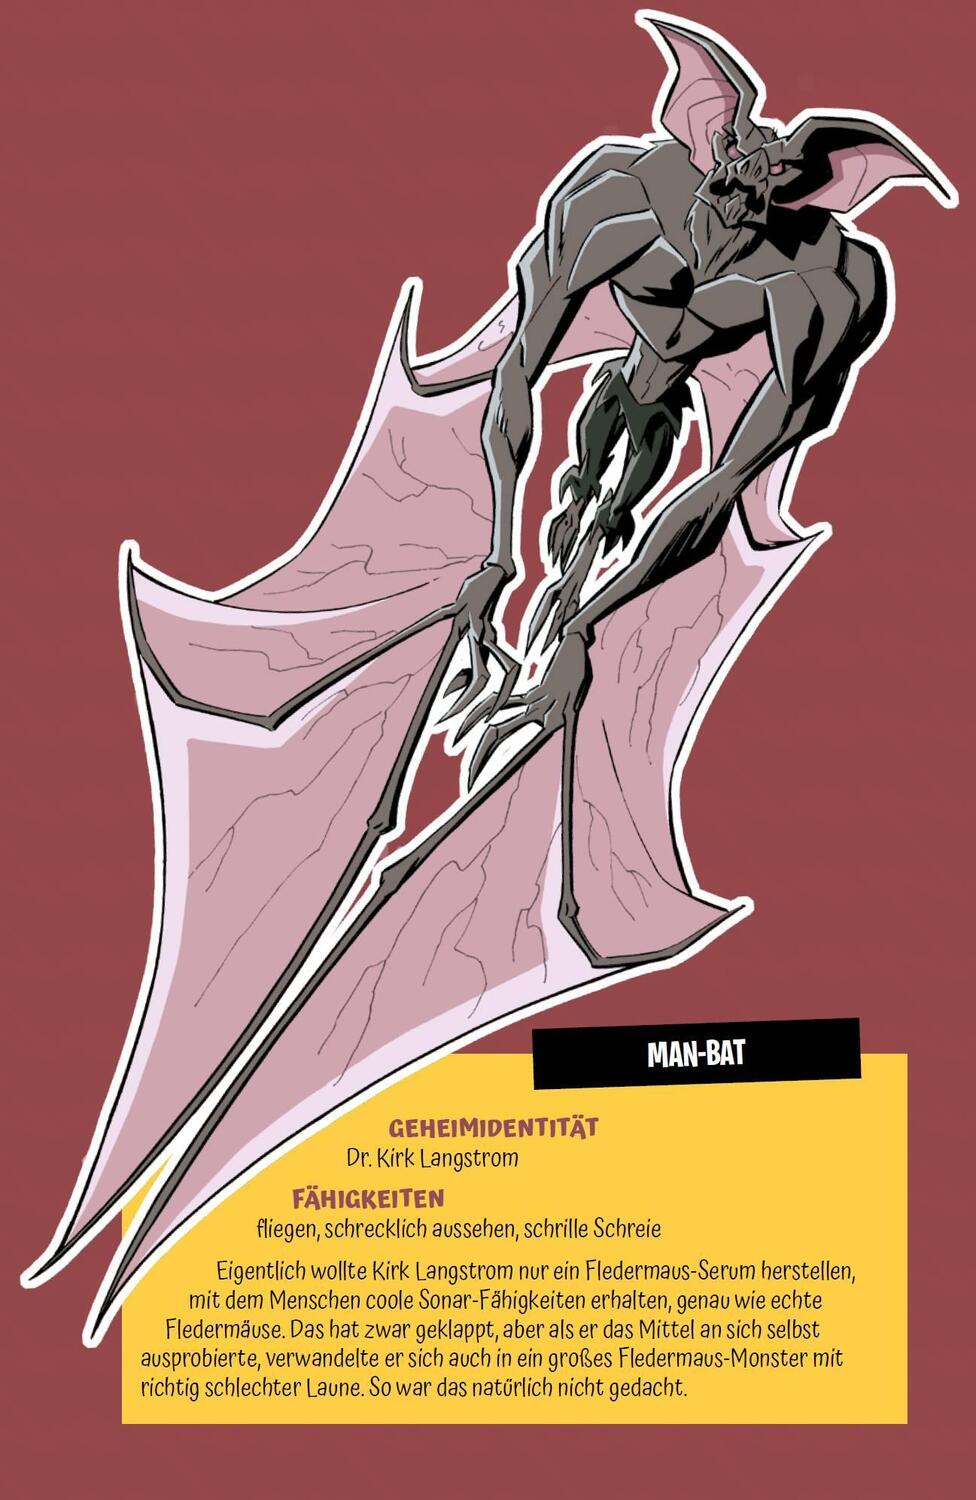 Bild: 9783741617454 | Mein erster Comic: Batman gegen Man-Bat | Matthew K. Manning (u. a.)